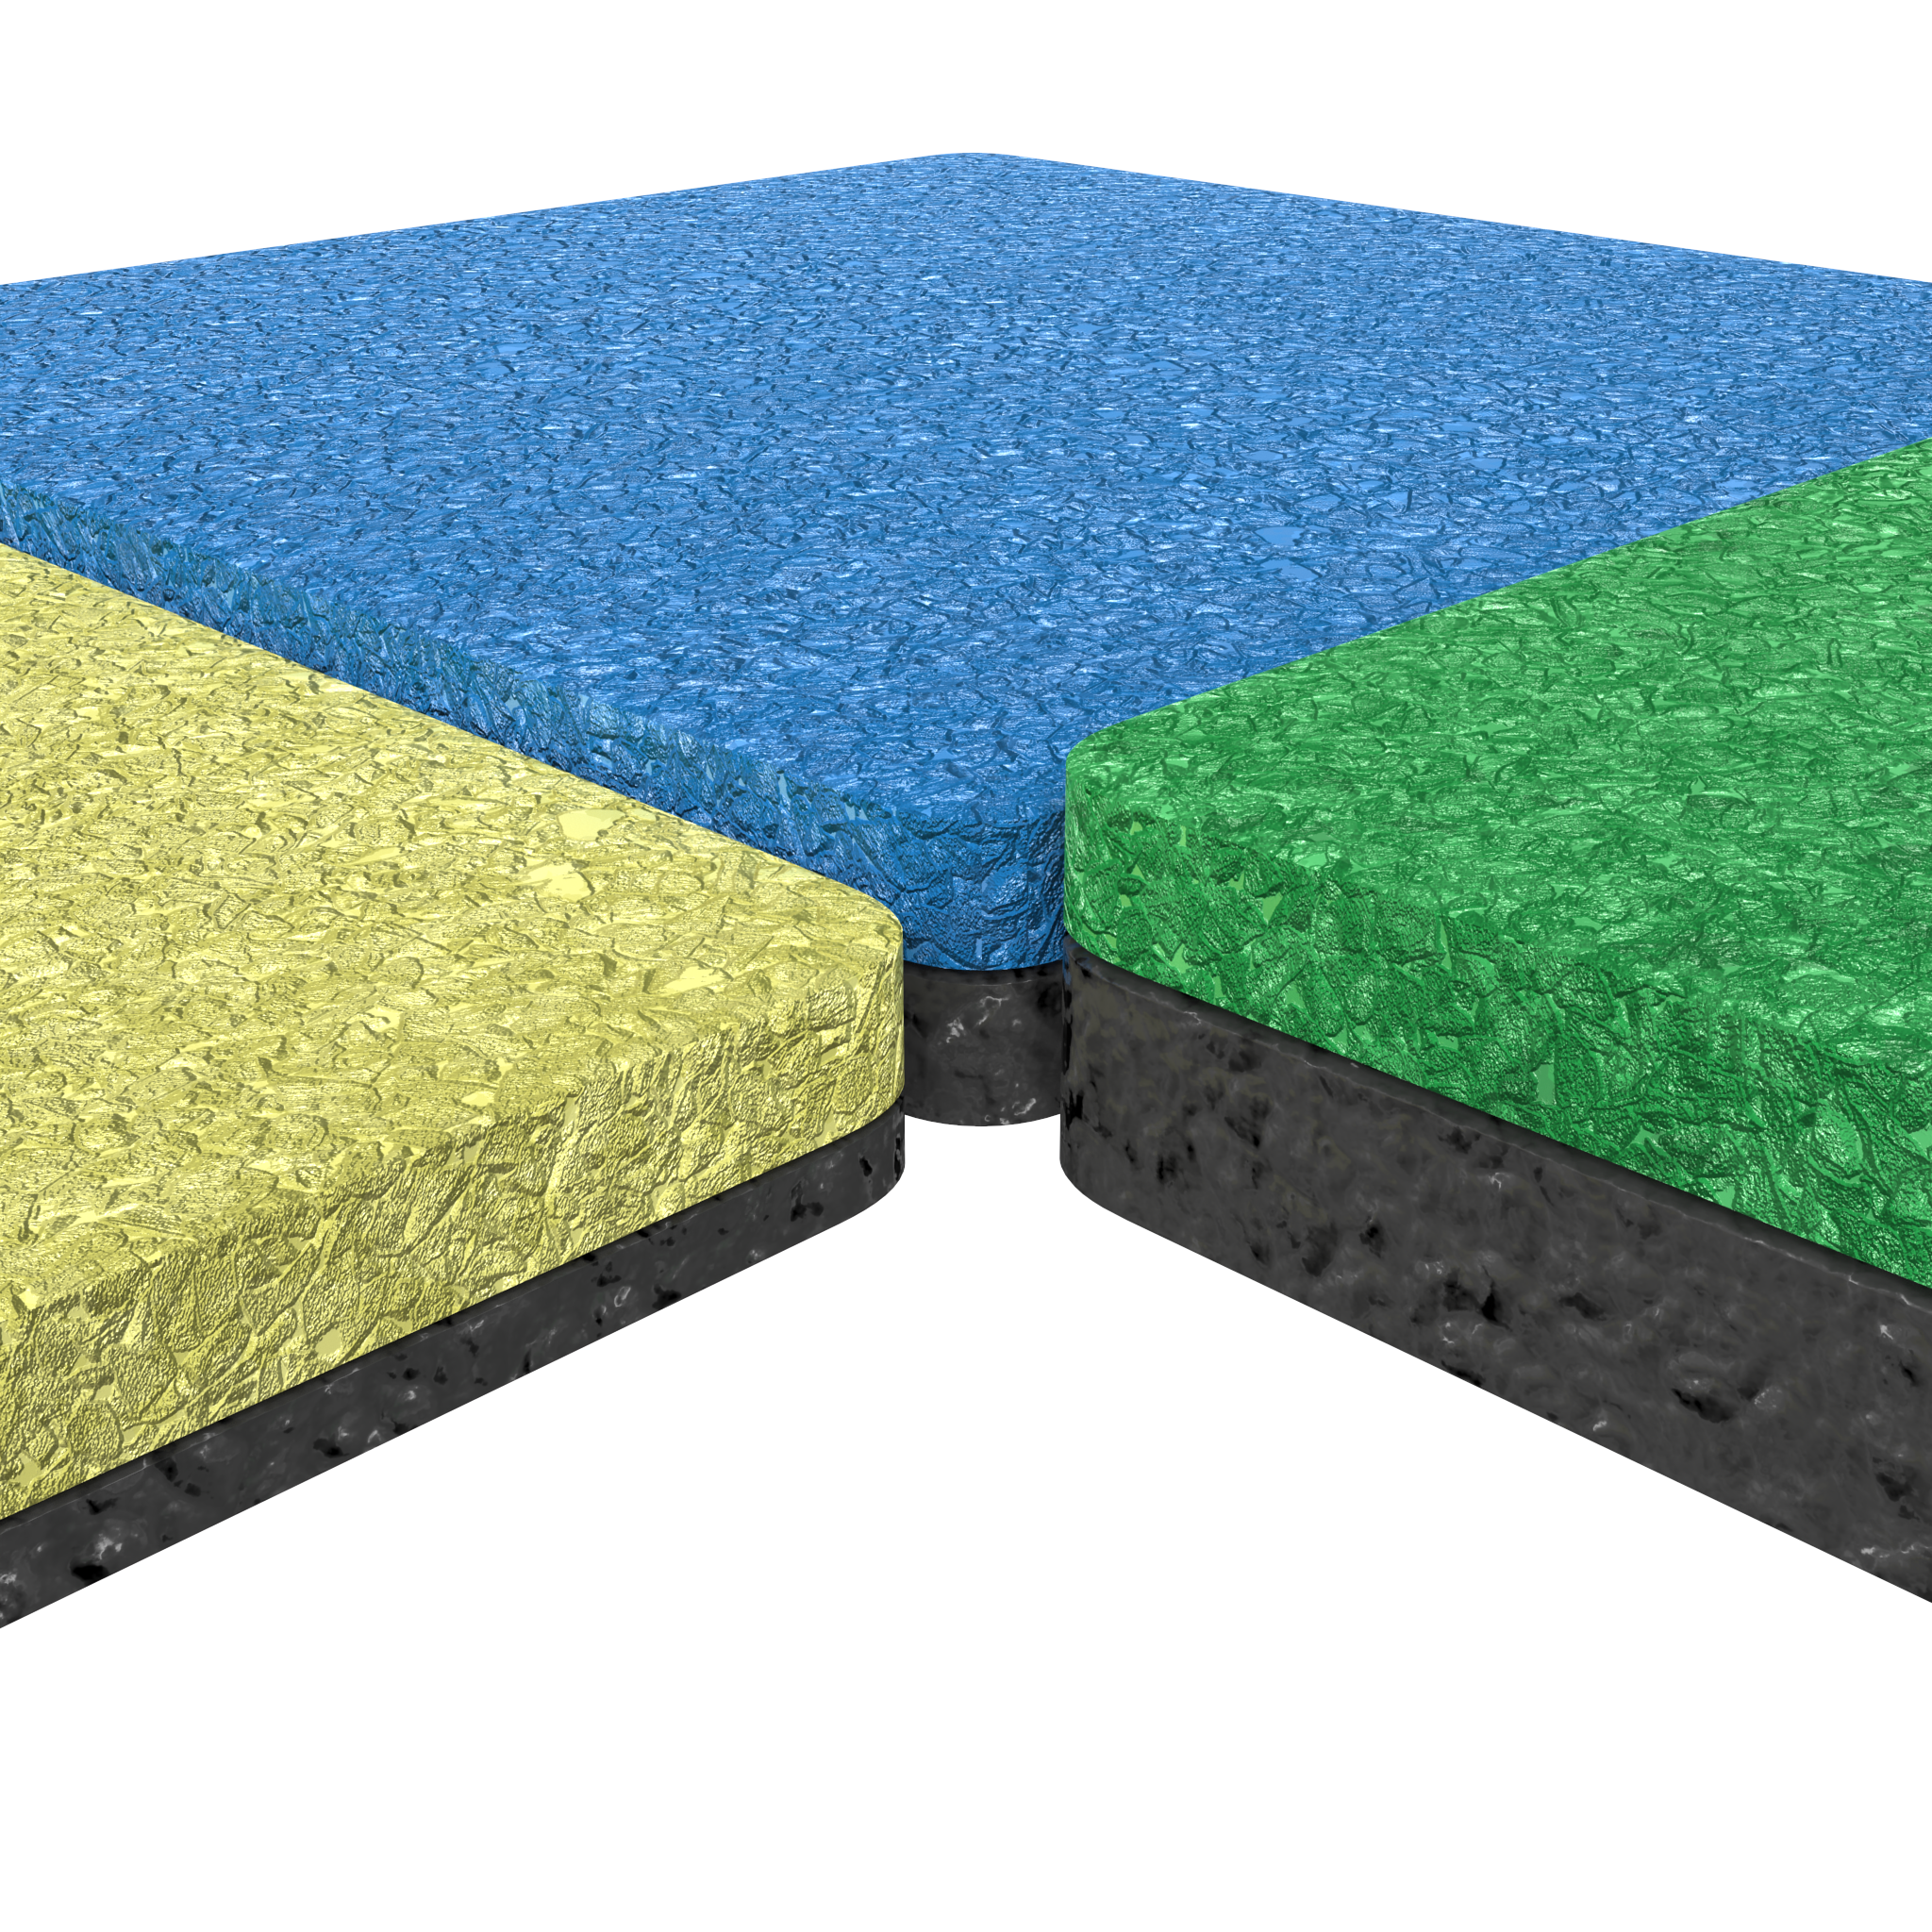 L'image montre un revêtement de sol pour aire de jeux